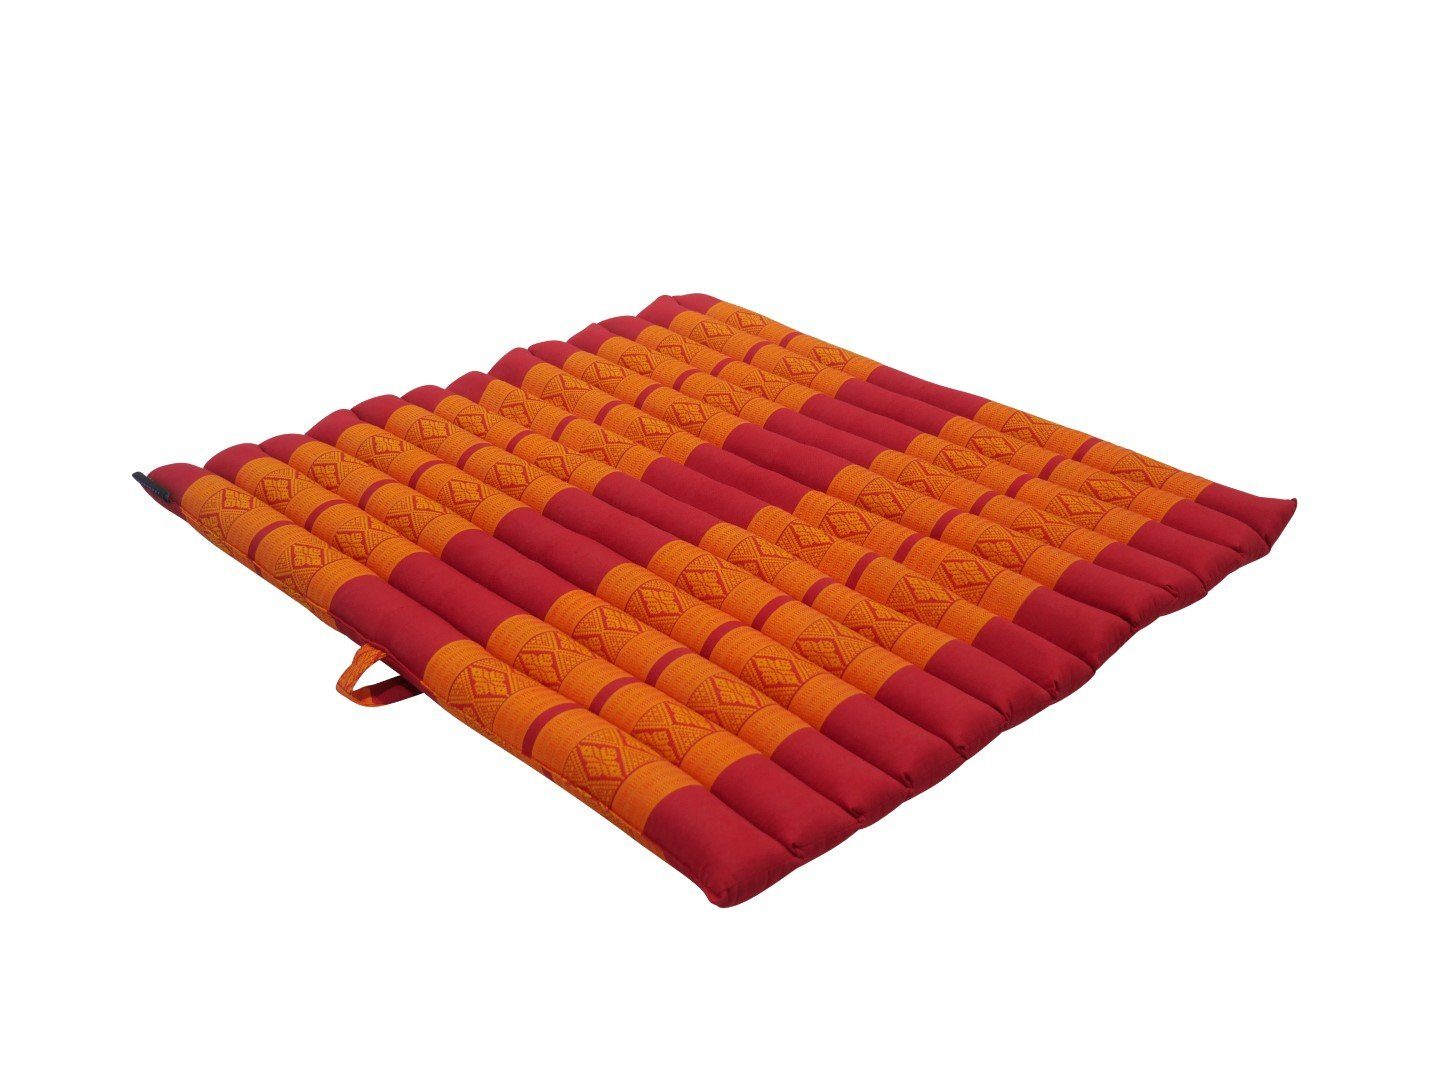 Yoga Meditationsmatte rollbar Hamam Muster Zabuton Yogakissen rot-orange, weich, orientalisches angenehm cm my unterstützend, 69x78x4.5